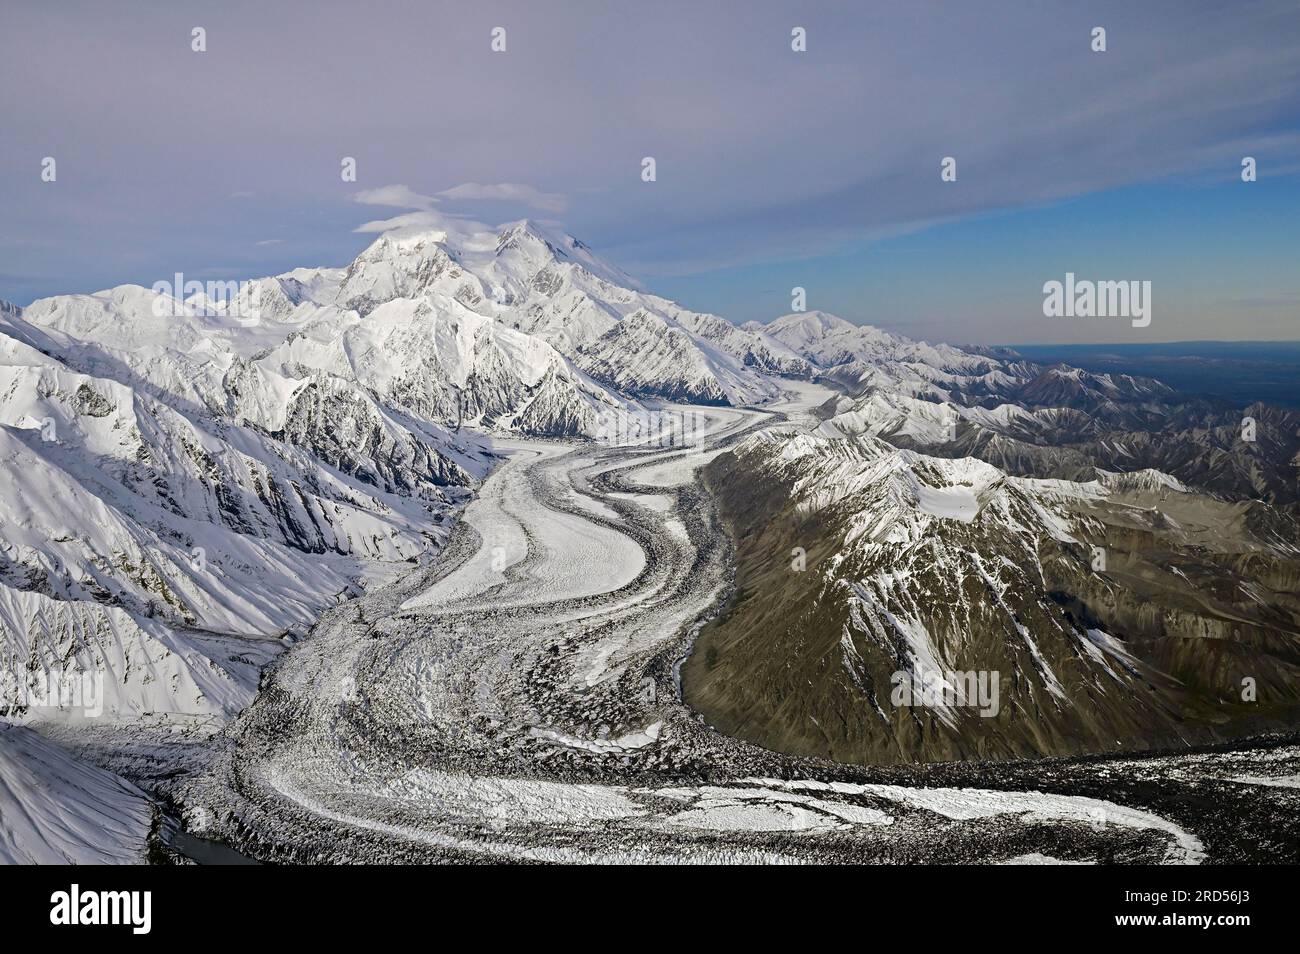 Vue aérienne de la chaîne de montagnes de l'Alaska avec une vue sur Denali avec le glacier Muldrow, Alaska, USA Banque D'Images